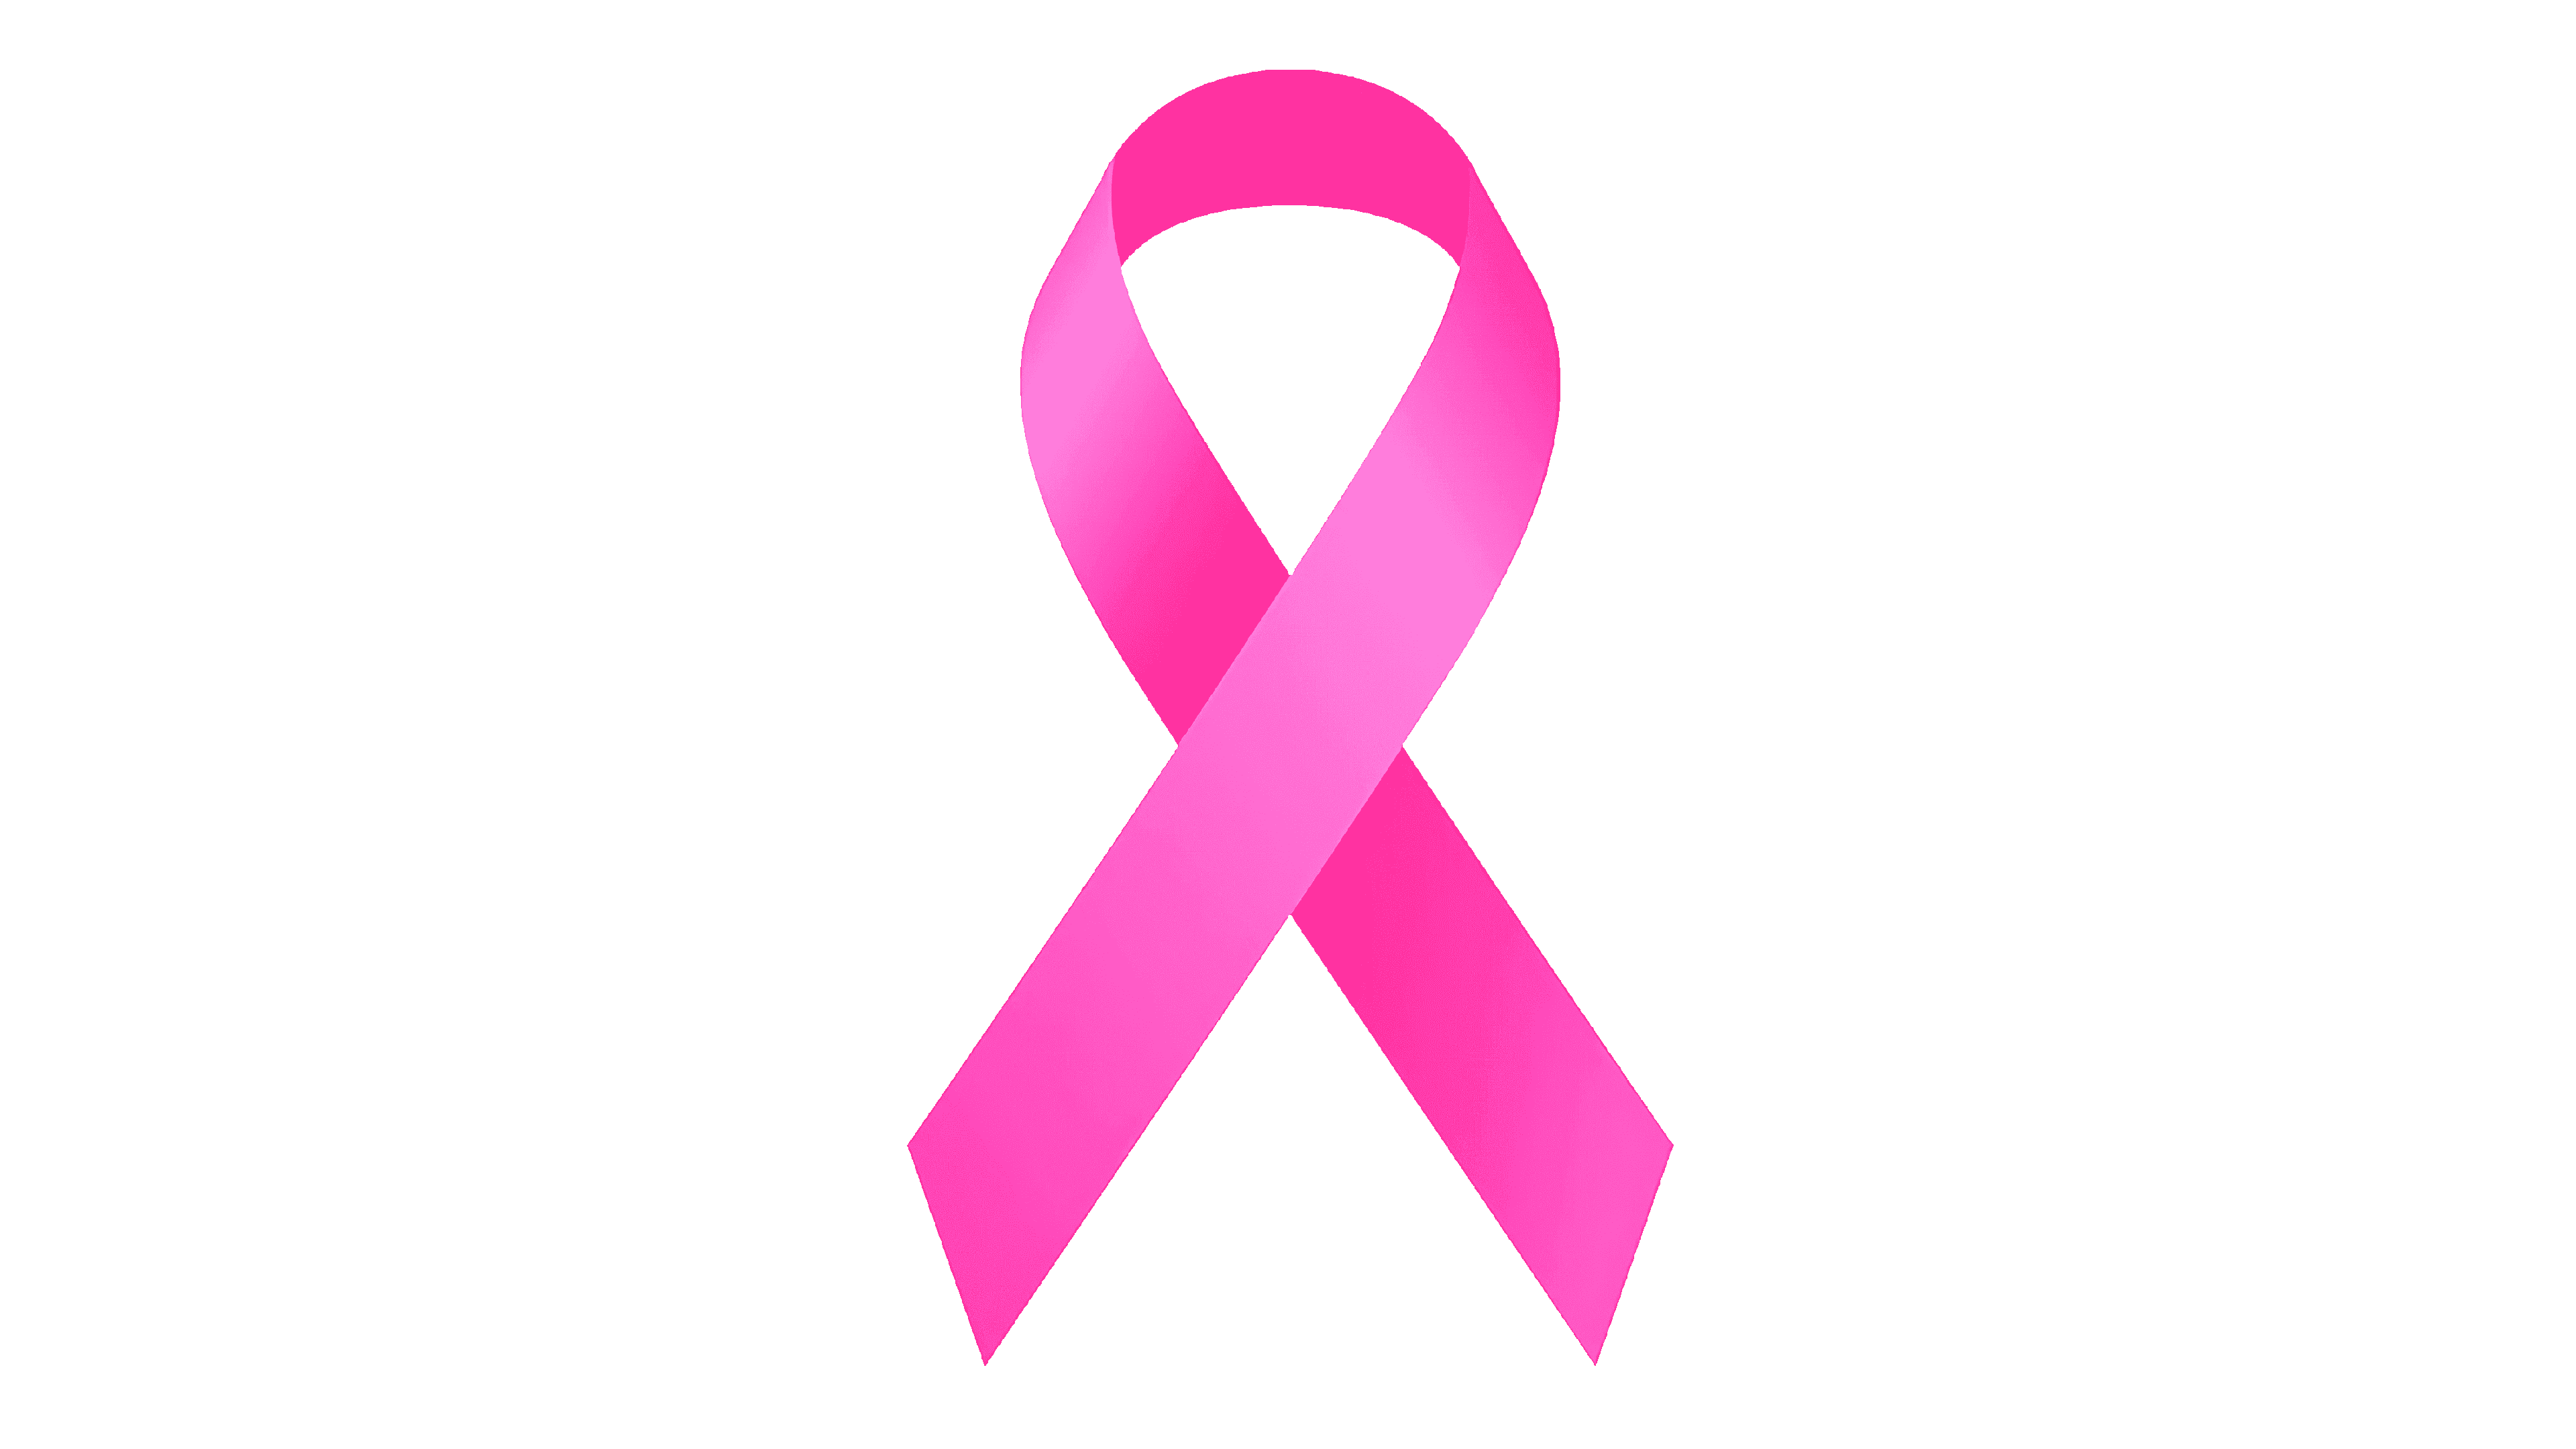 Establishing the pink ribbon symbol